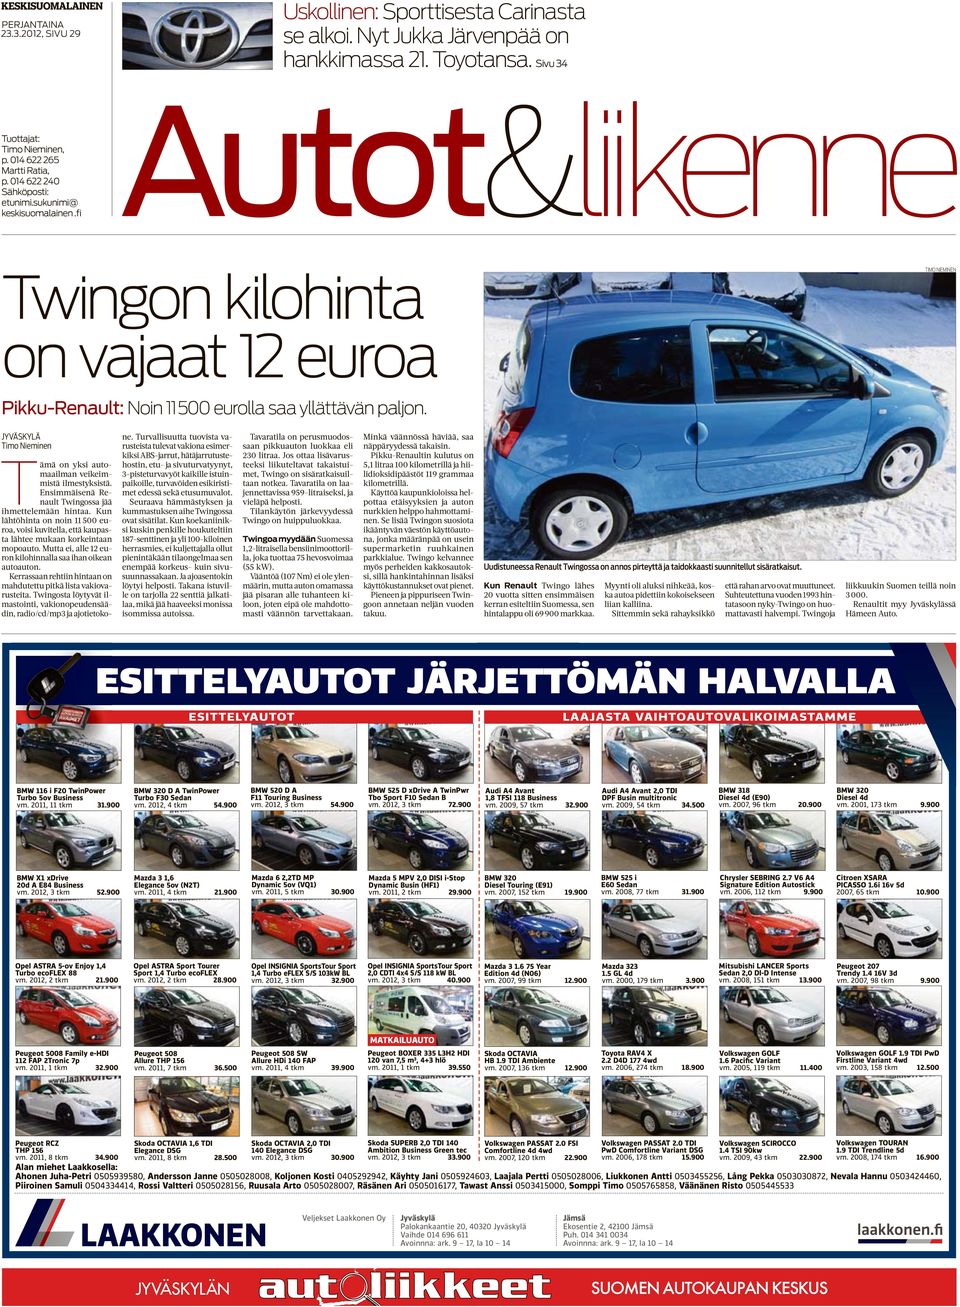 Tämä on yksi automaailman veikeimmistä ilmestyksistä. Ensimmäisenä Renault Twingossa jää ihmettelemään hintaa.